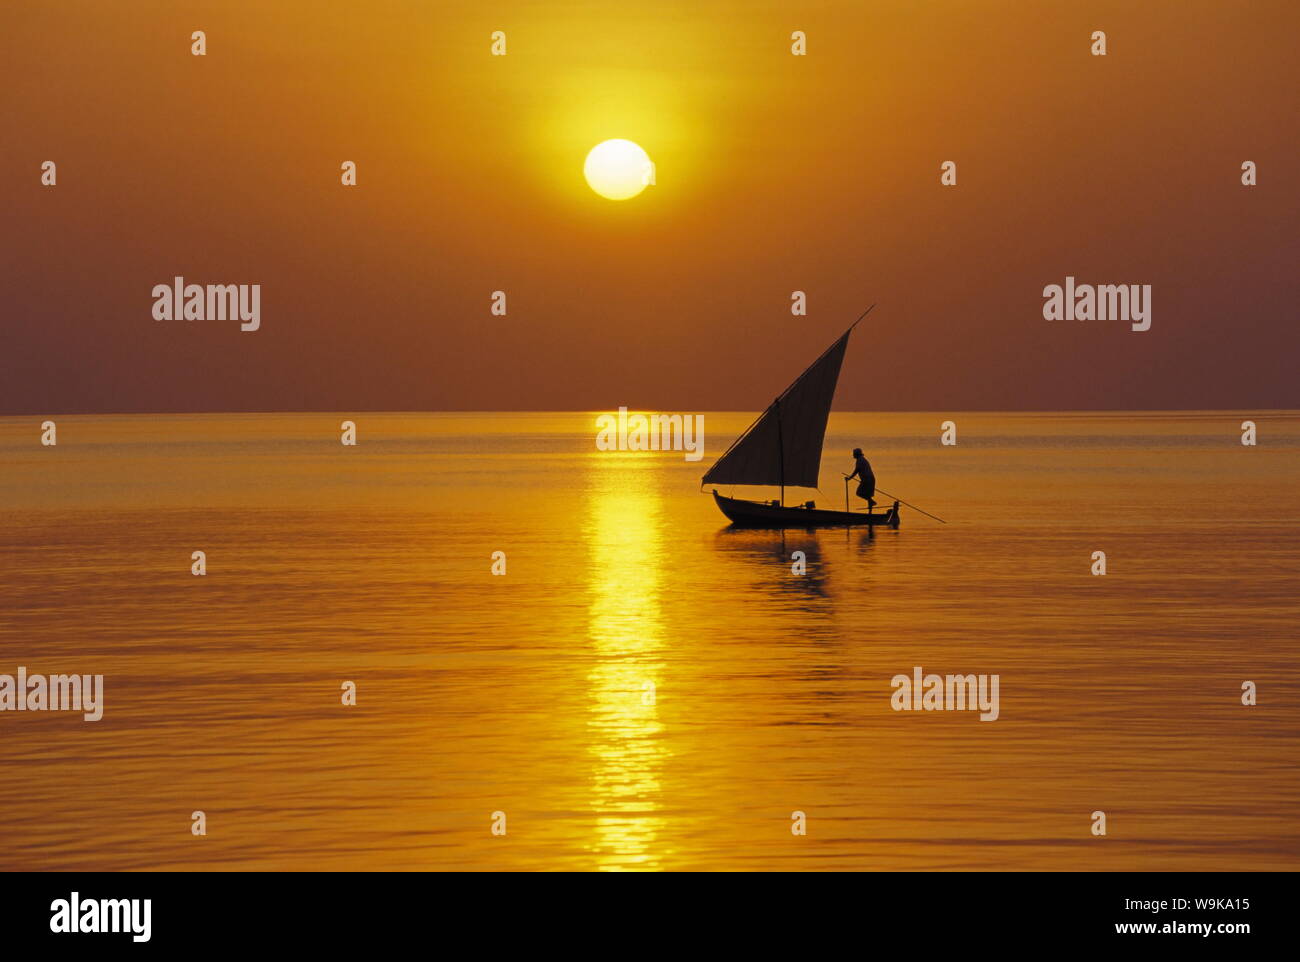 La voile traditionnelle dhoni au coucher du soleil, les Maldives, l'Océan Indien, l'Asie Banque D'Images